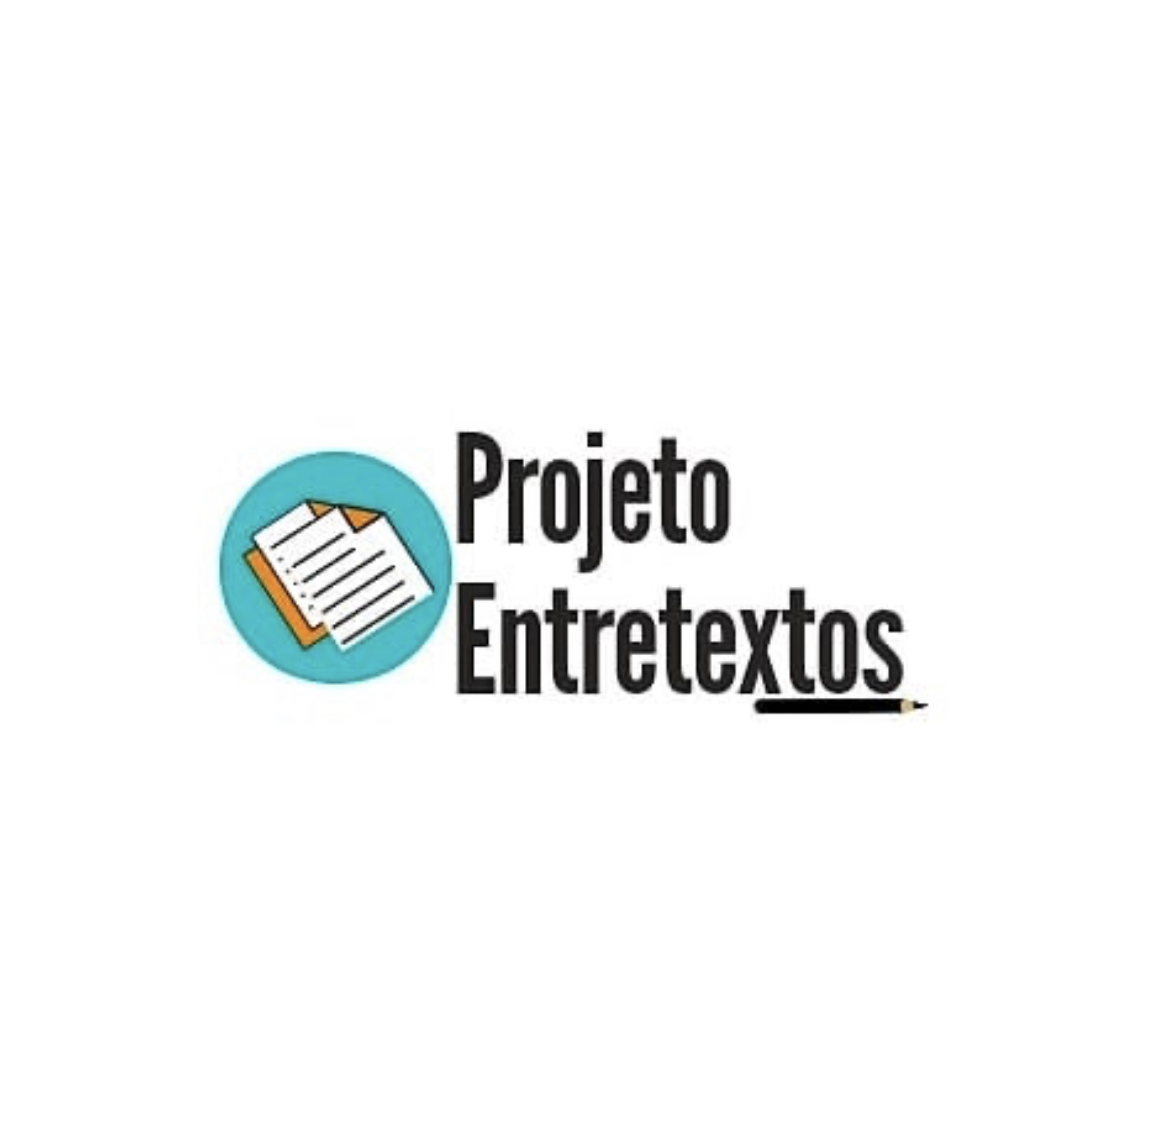 Projeto Entretextos reúne preparação para o vestibular e exercício de práticas acadêmicas na Cidade Universitária Dom Delgado